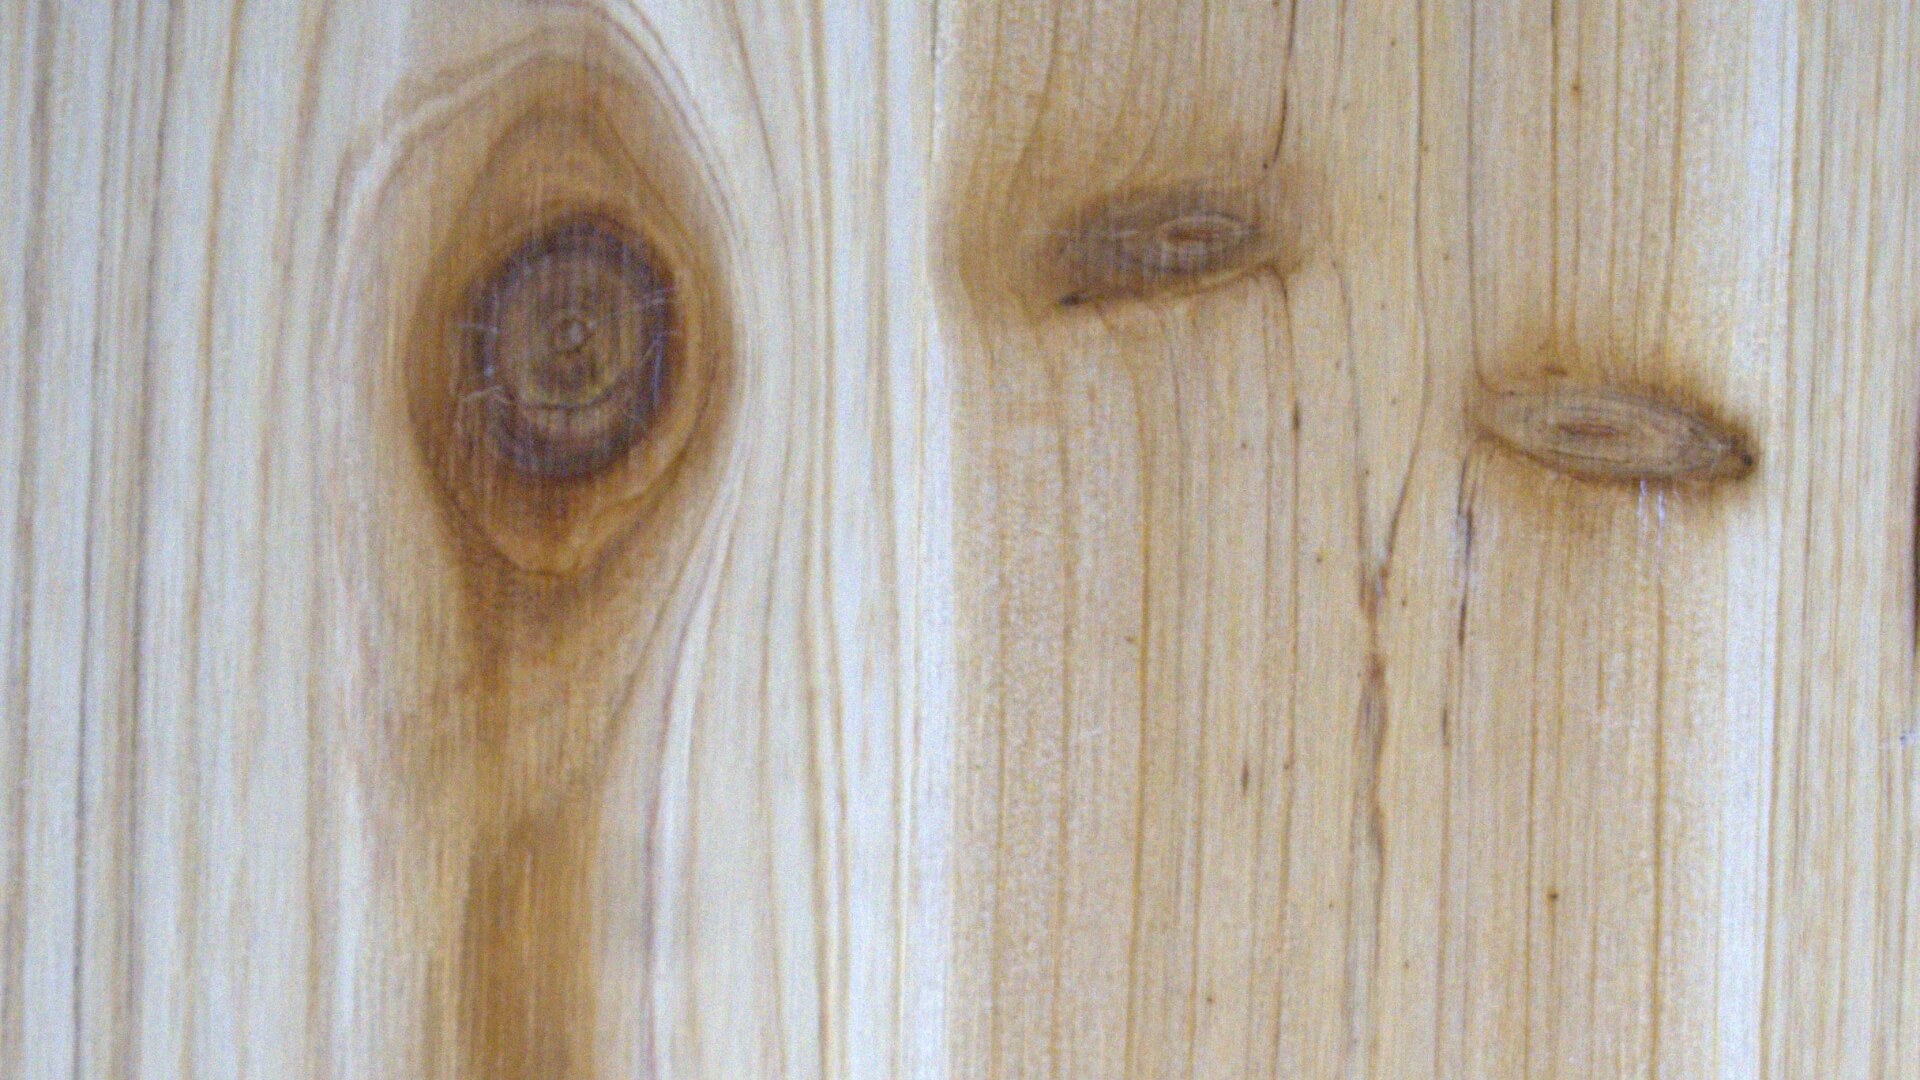 Die Holzplatte der Bierzeltgarnitur in Baumarktqualität enthält viele Asteinschlüsse.